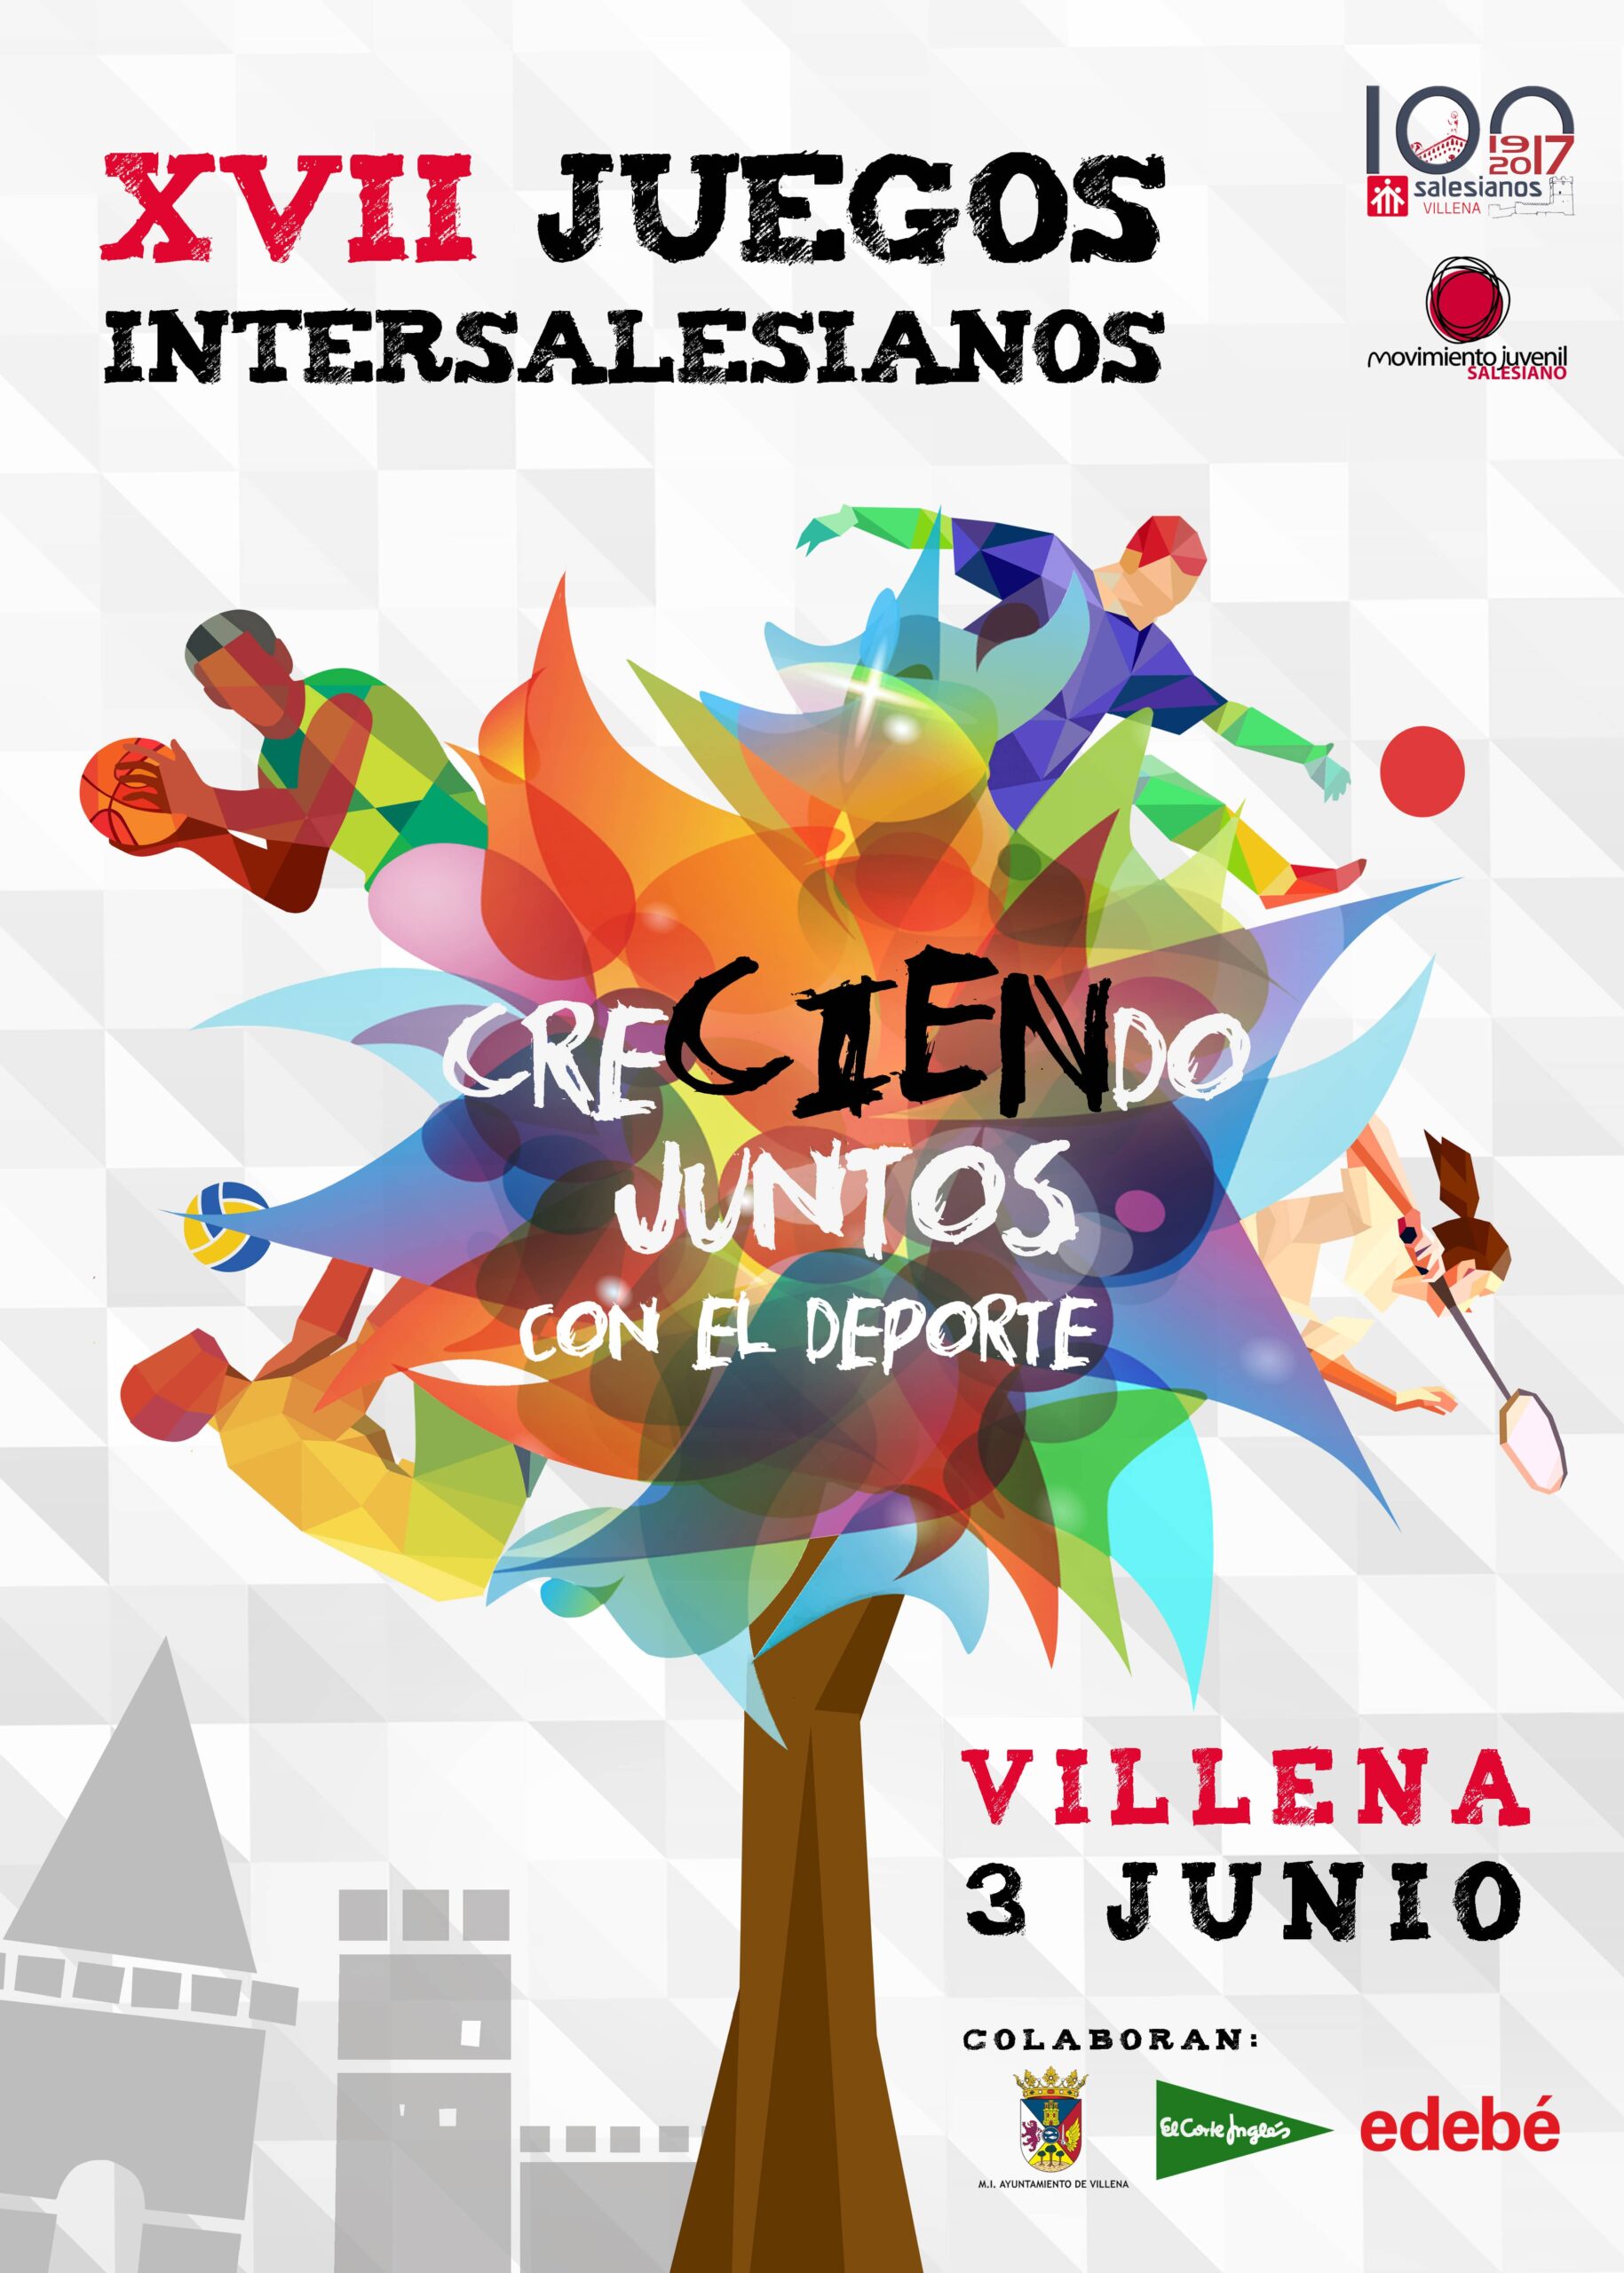 XVII Juegos Intersalesianos en Villena